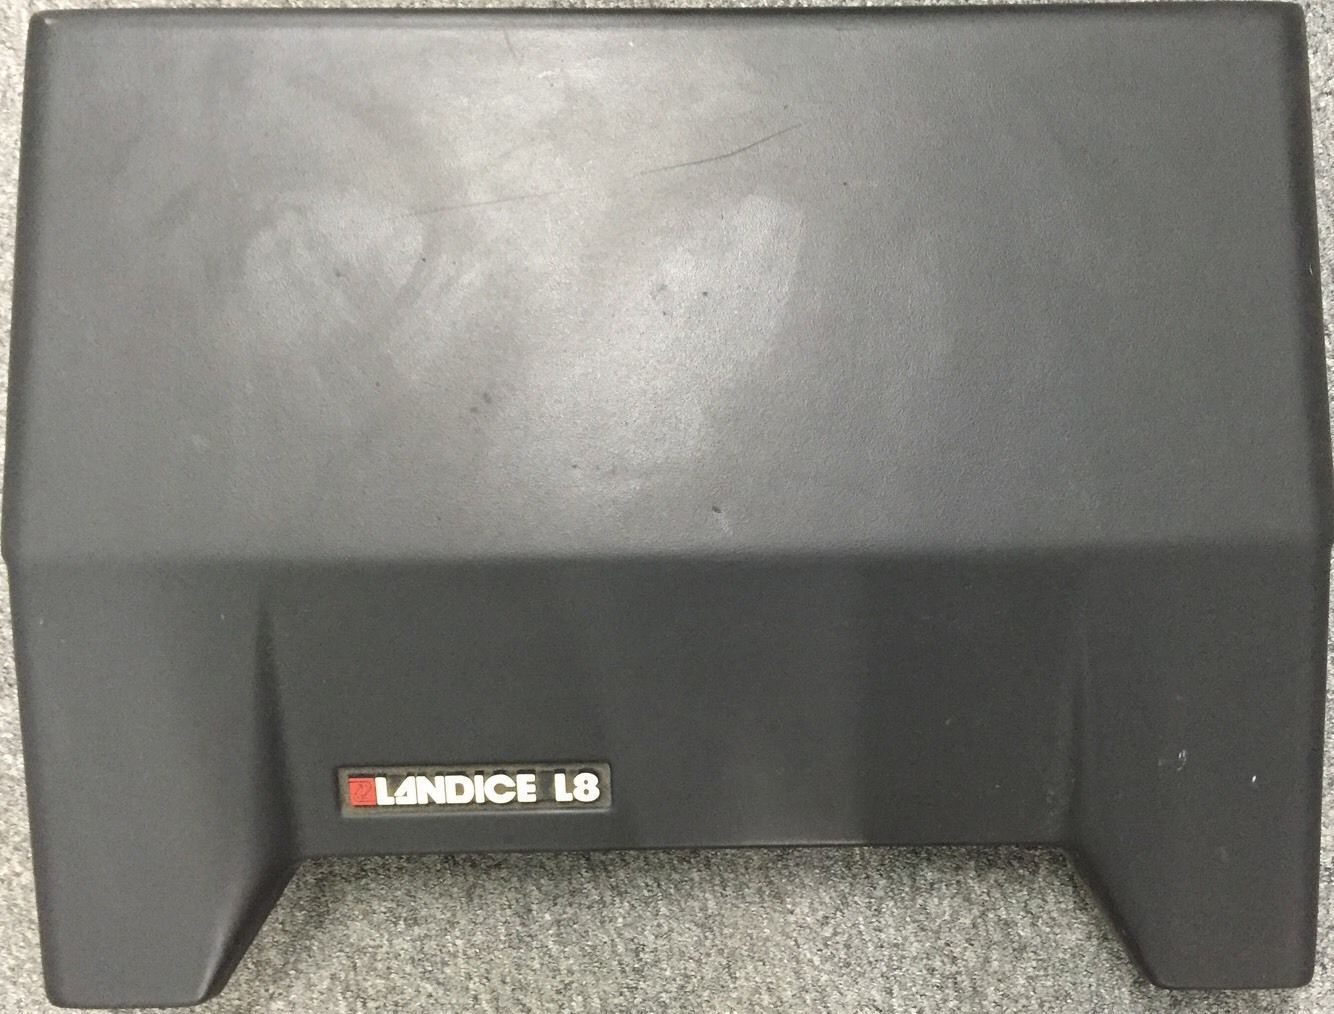 Landice L8 Pro Sports Trainer Treadmill Plastic Motor Hood Shroud (Used)